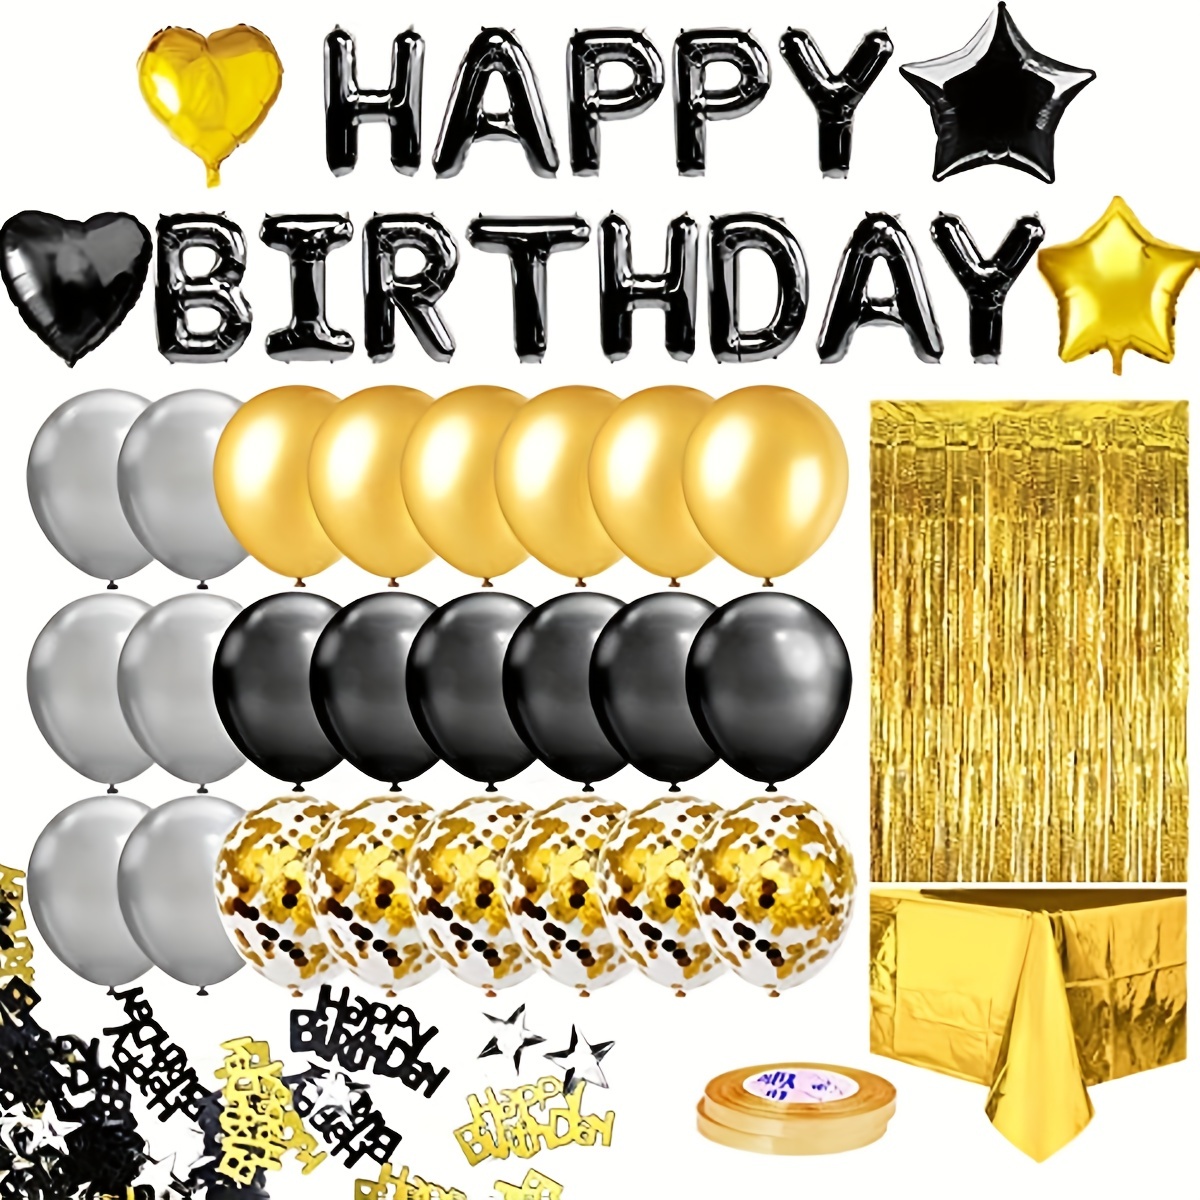 Black & Gold Happy Birthday Centerpiece